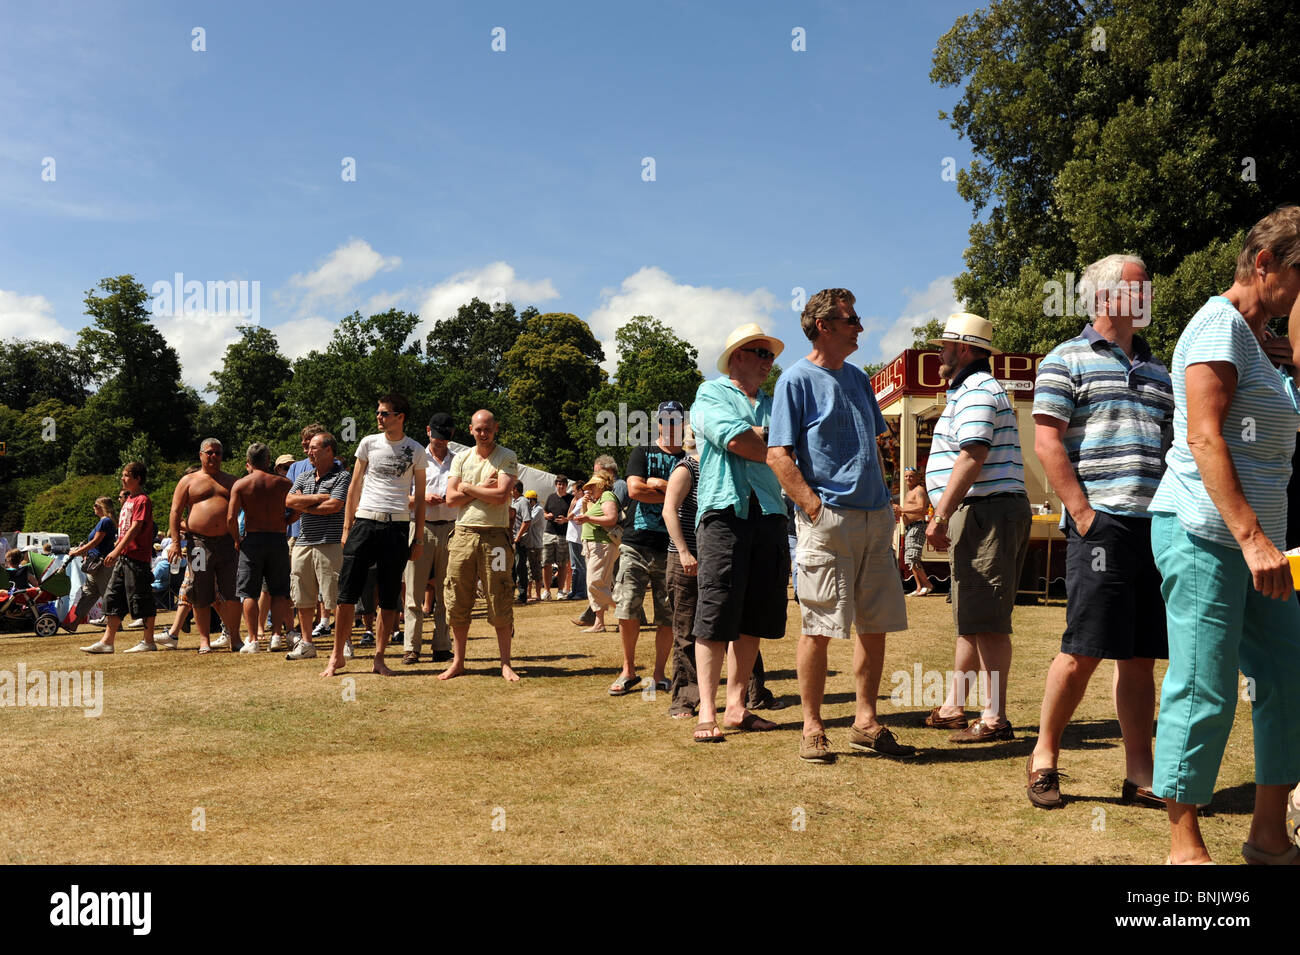 Les gens de la file d'at Arundel Castle cricket ground dans West Sussex UK Banque D'Images